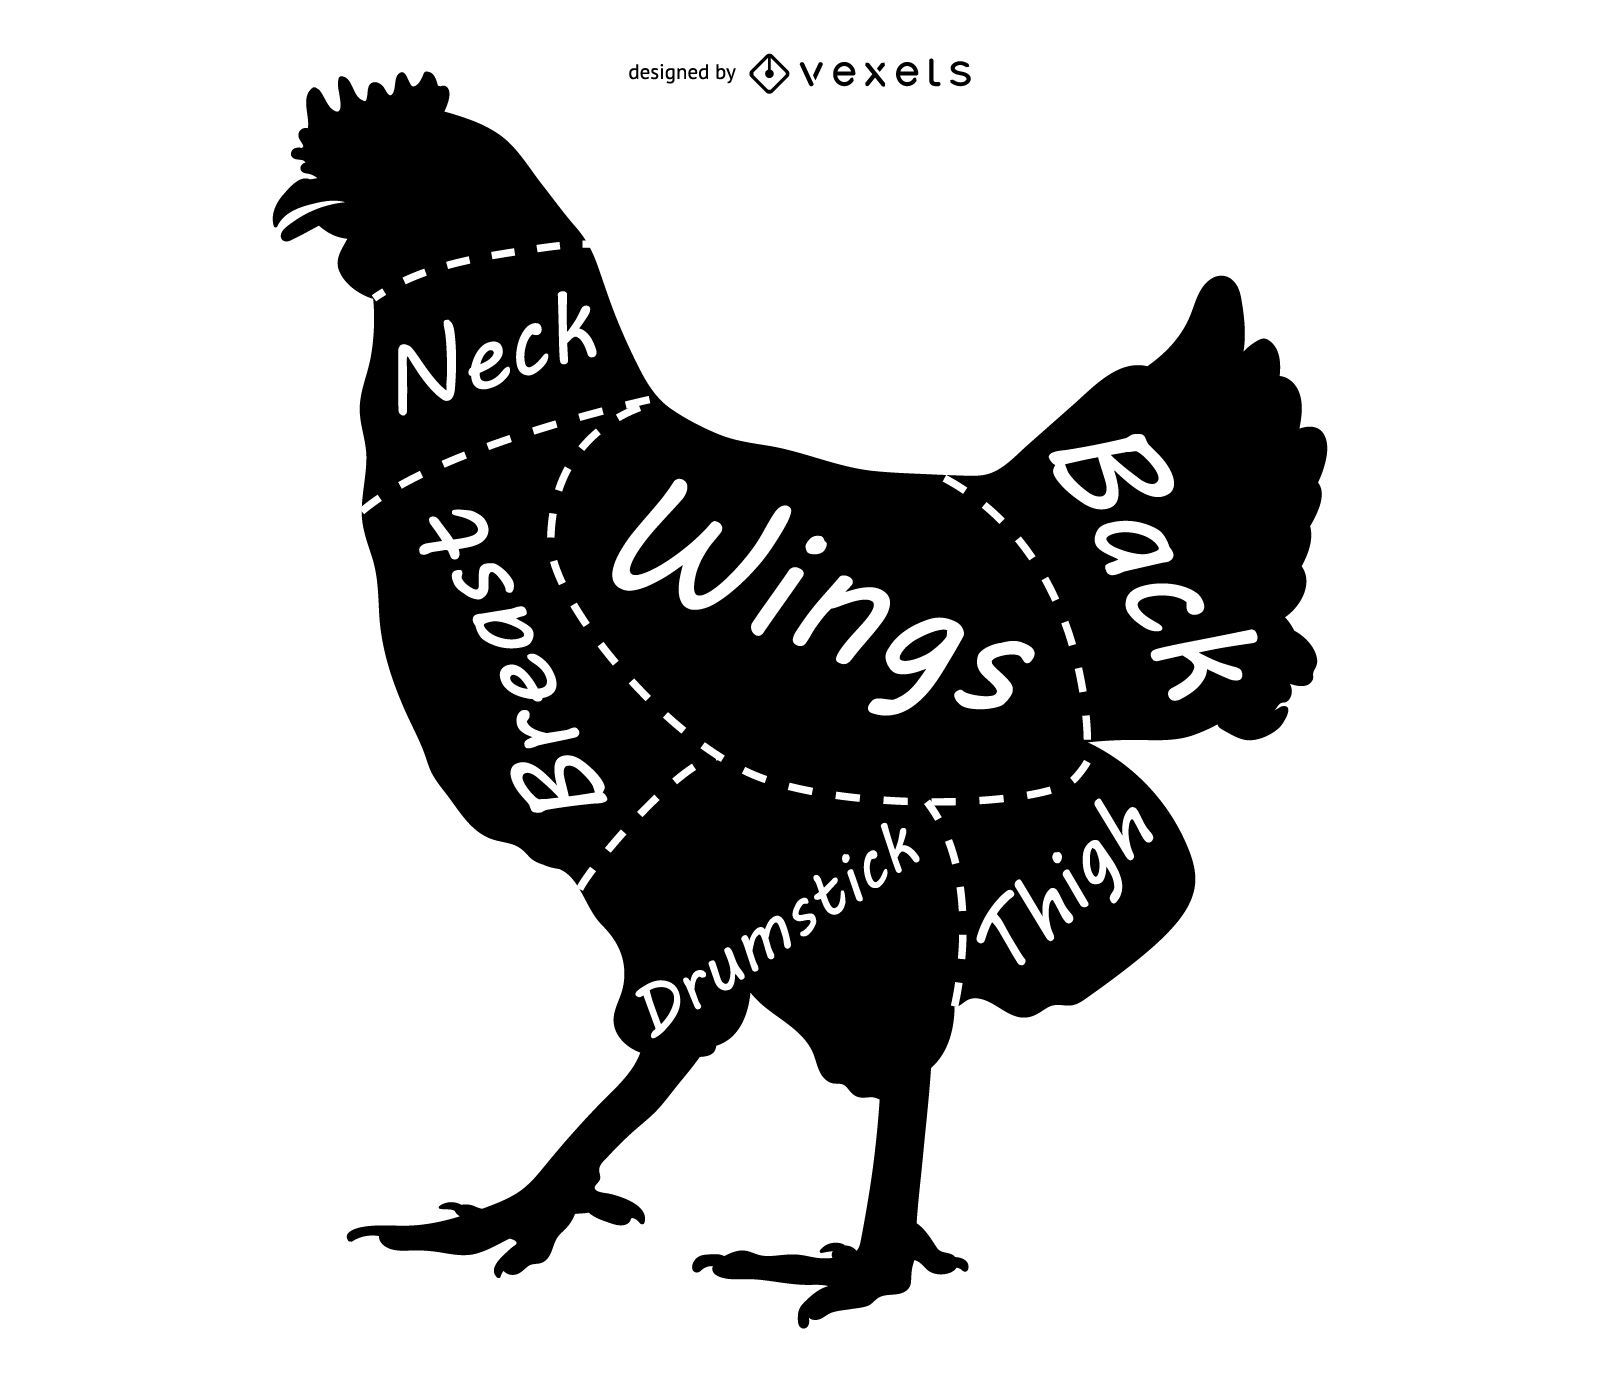 Chicken parts silhouette